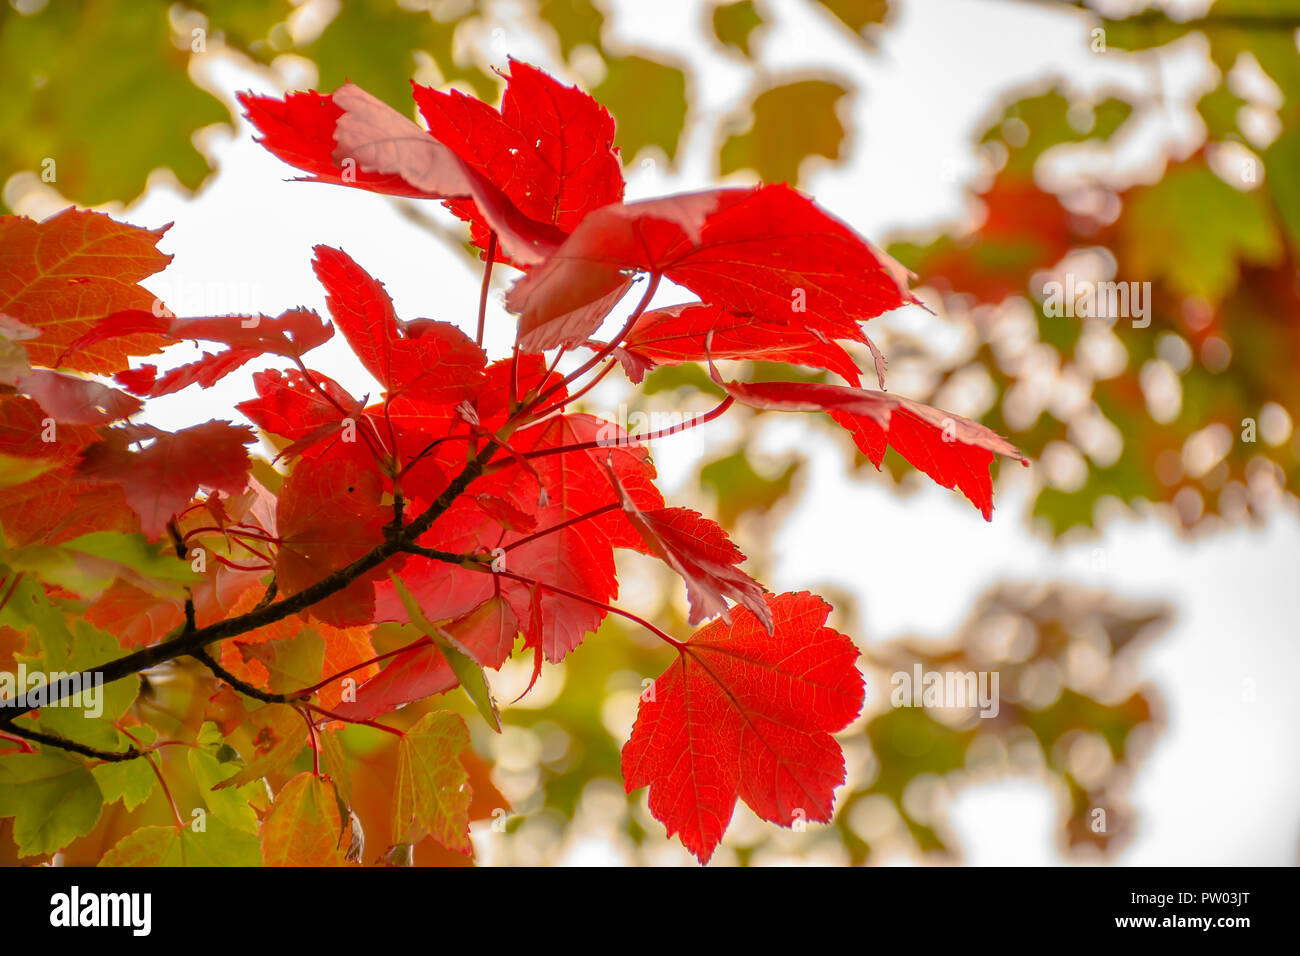 Albero di acero ramo con foglie rosse in autunno boschi colorati.Natura fotografia Uk.Autunno theme.Backlit bokeh e sfocata a rami di alberi in background. Foto Stock